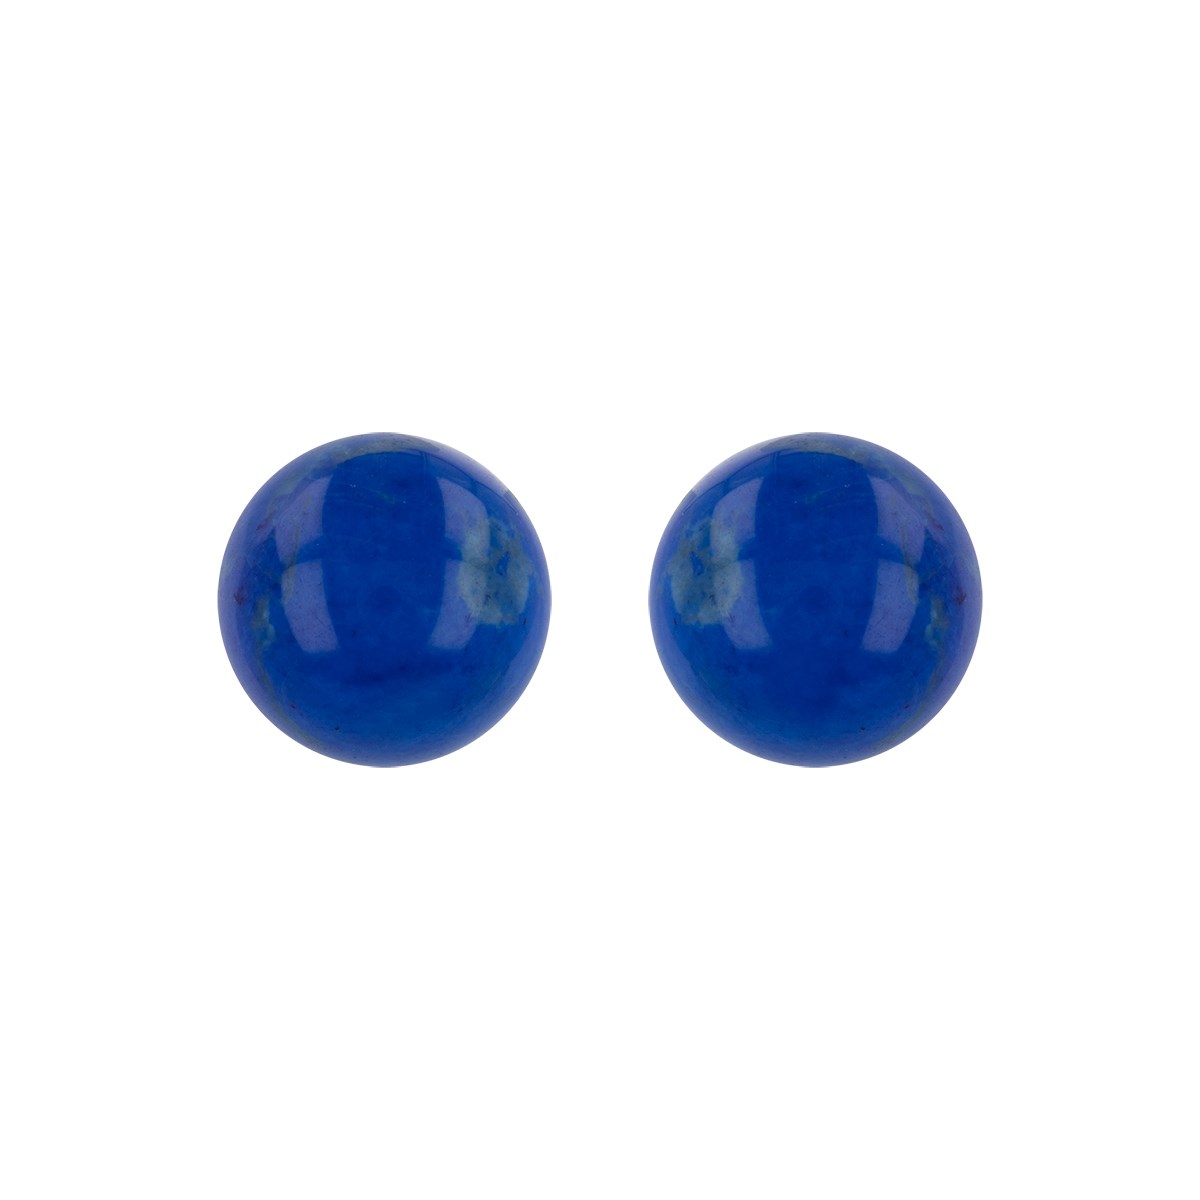 Boucles d'oreille argent rhodié perle lapis lazuli